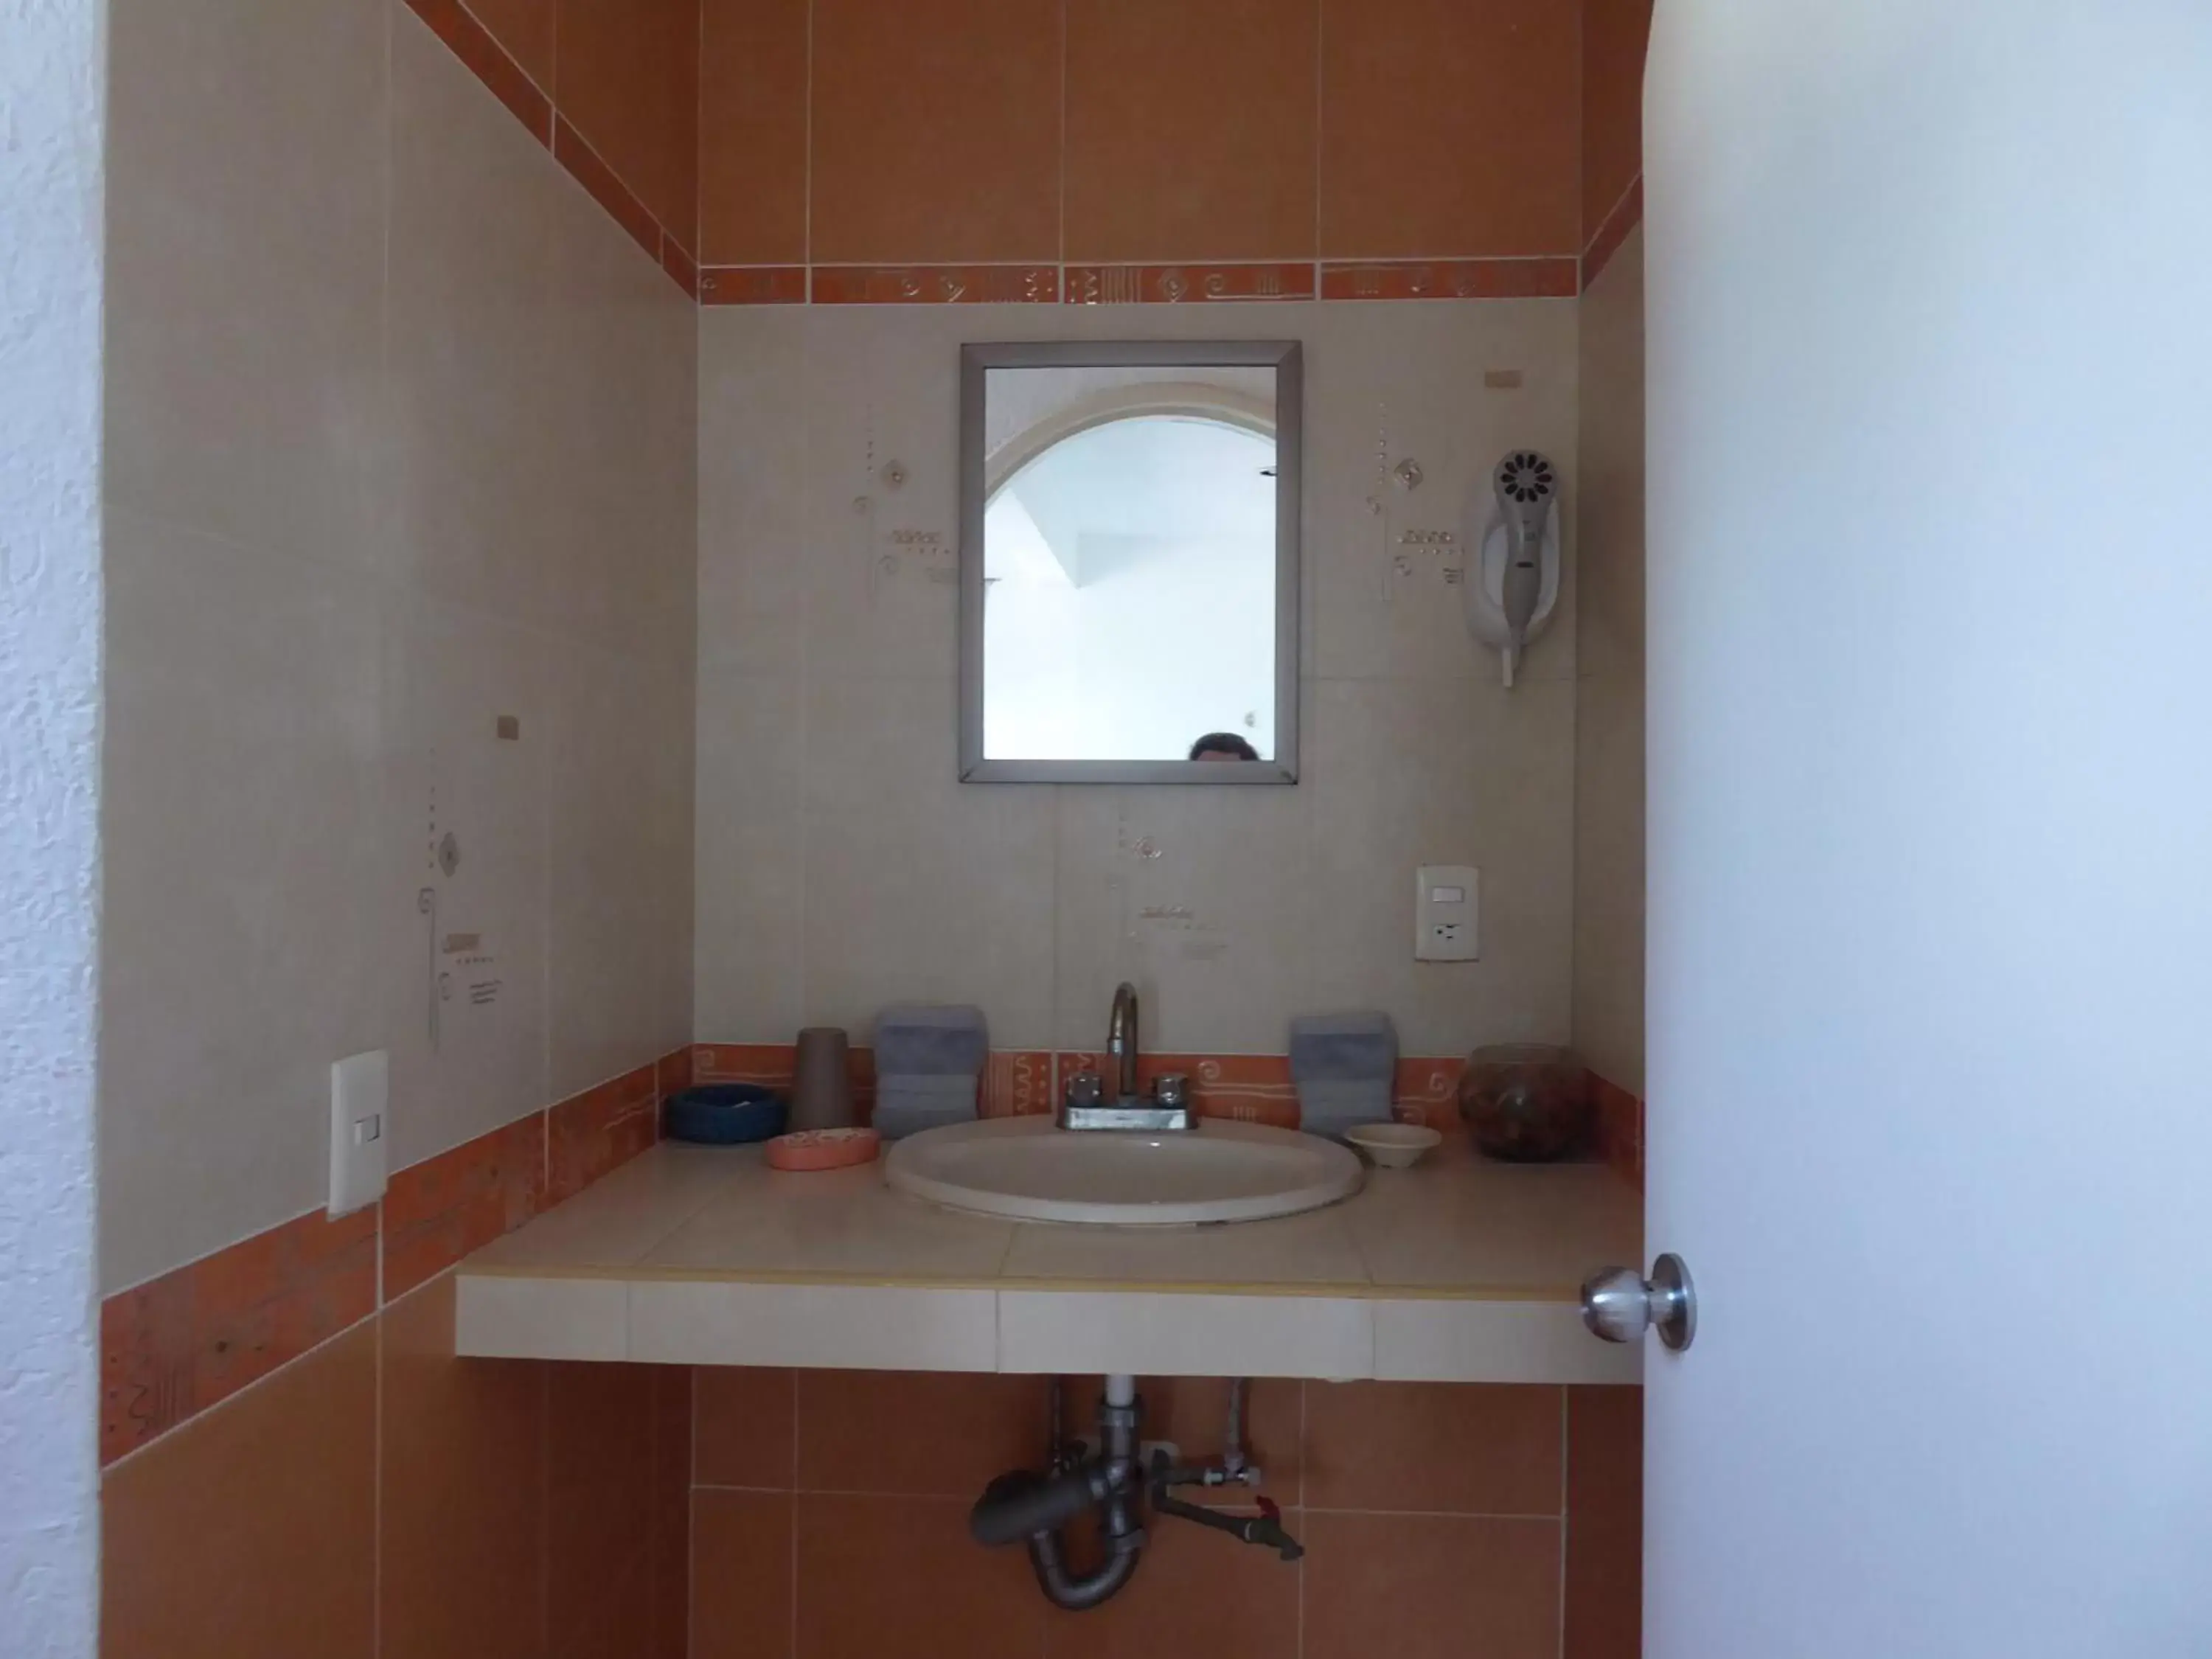 Bathroom, Dining Area in Claro de Luna